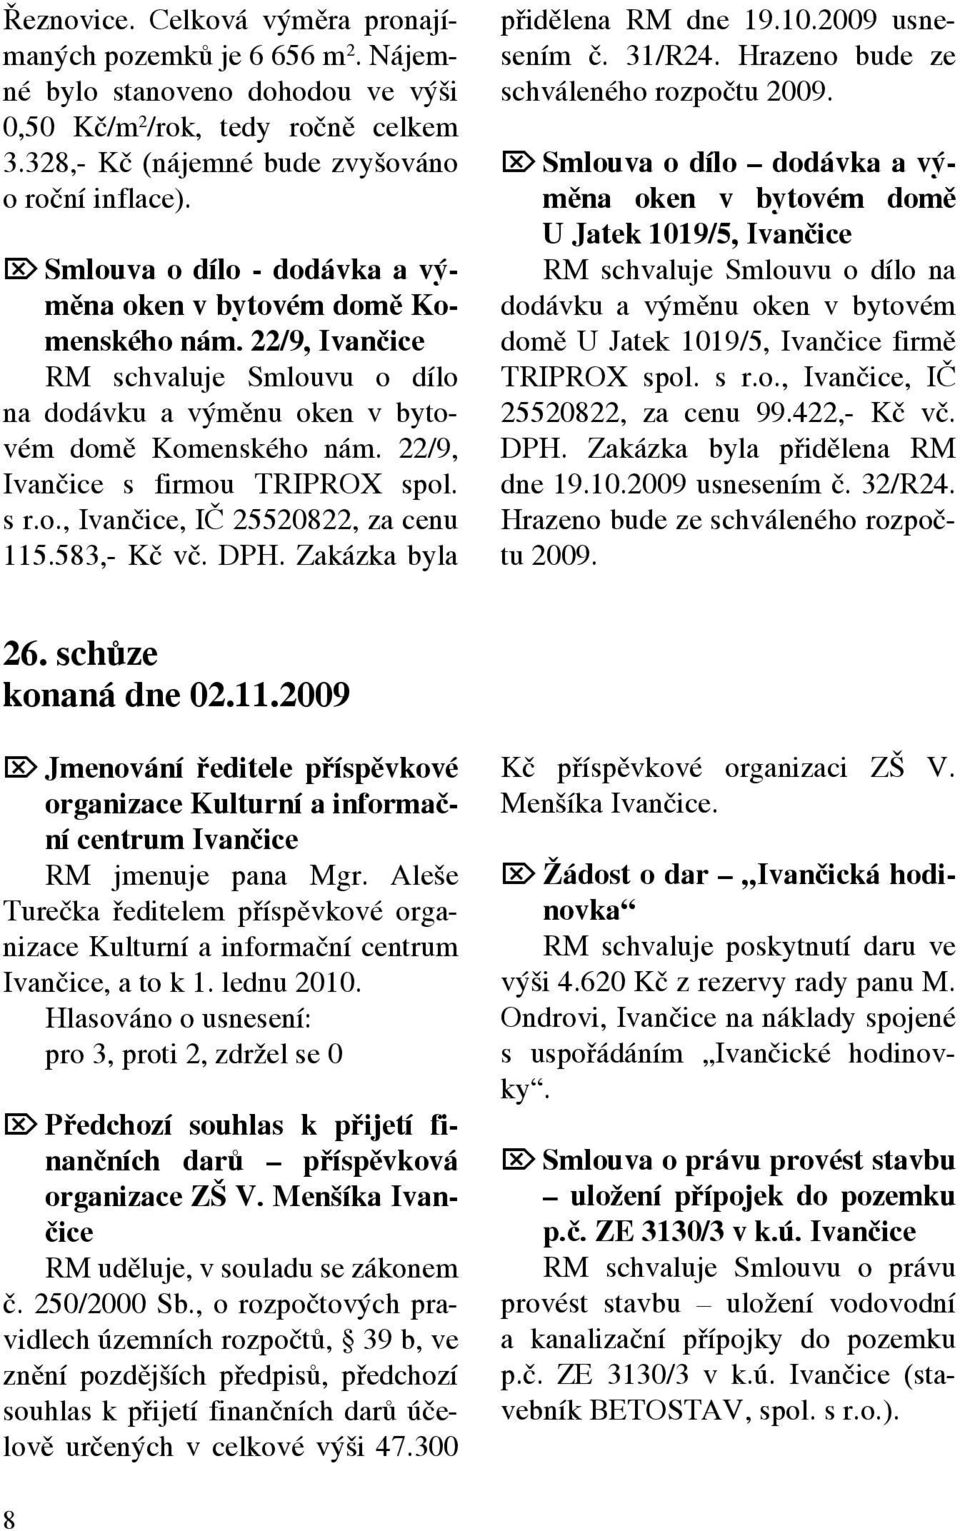 22/9, Ivančice s firmou TRIPROX spol. s r.o., Ivančice, IČ 25520822, za cenu 115.583,- Kč vč. DPH. Zakázka byla přidělena RM dne 19.10.2009 usnesením č. 31/R24.